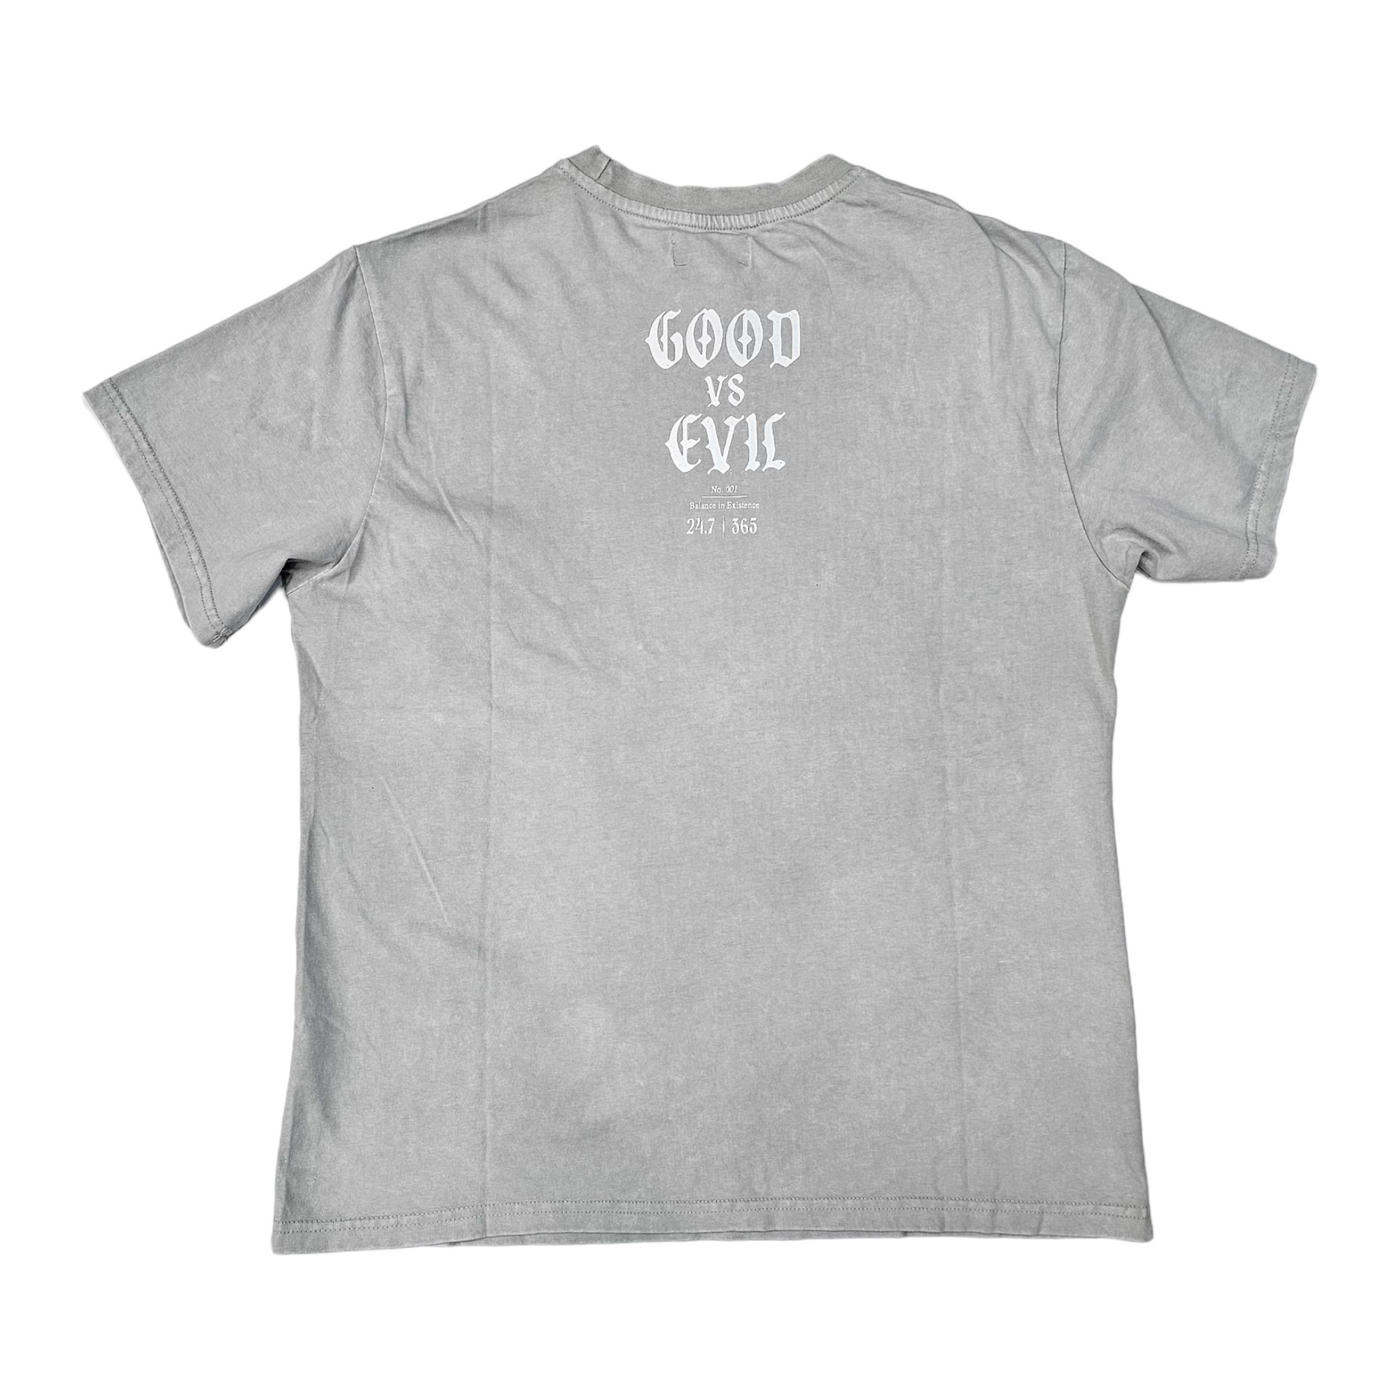 Highly Undrtd Good VS Evil T-Shirt Vintage Wash US4114W